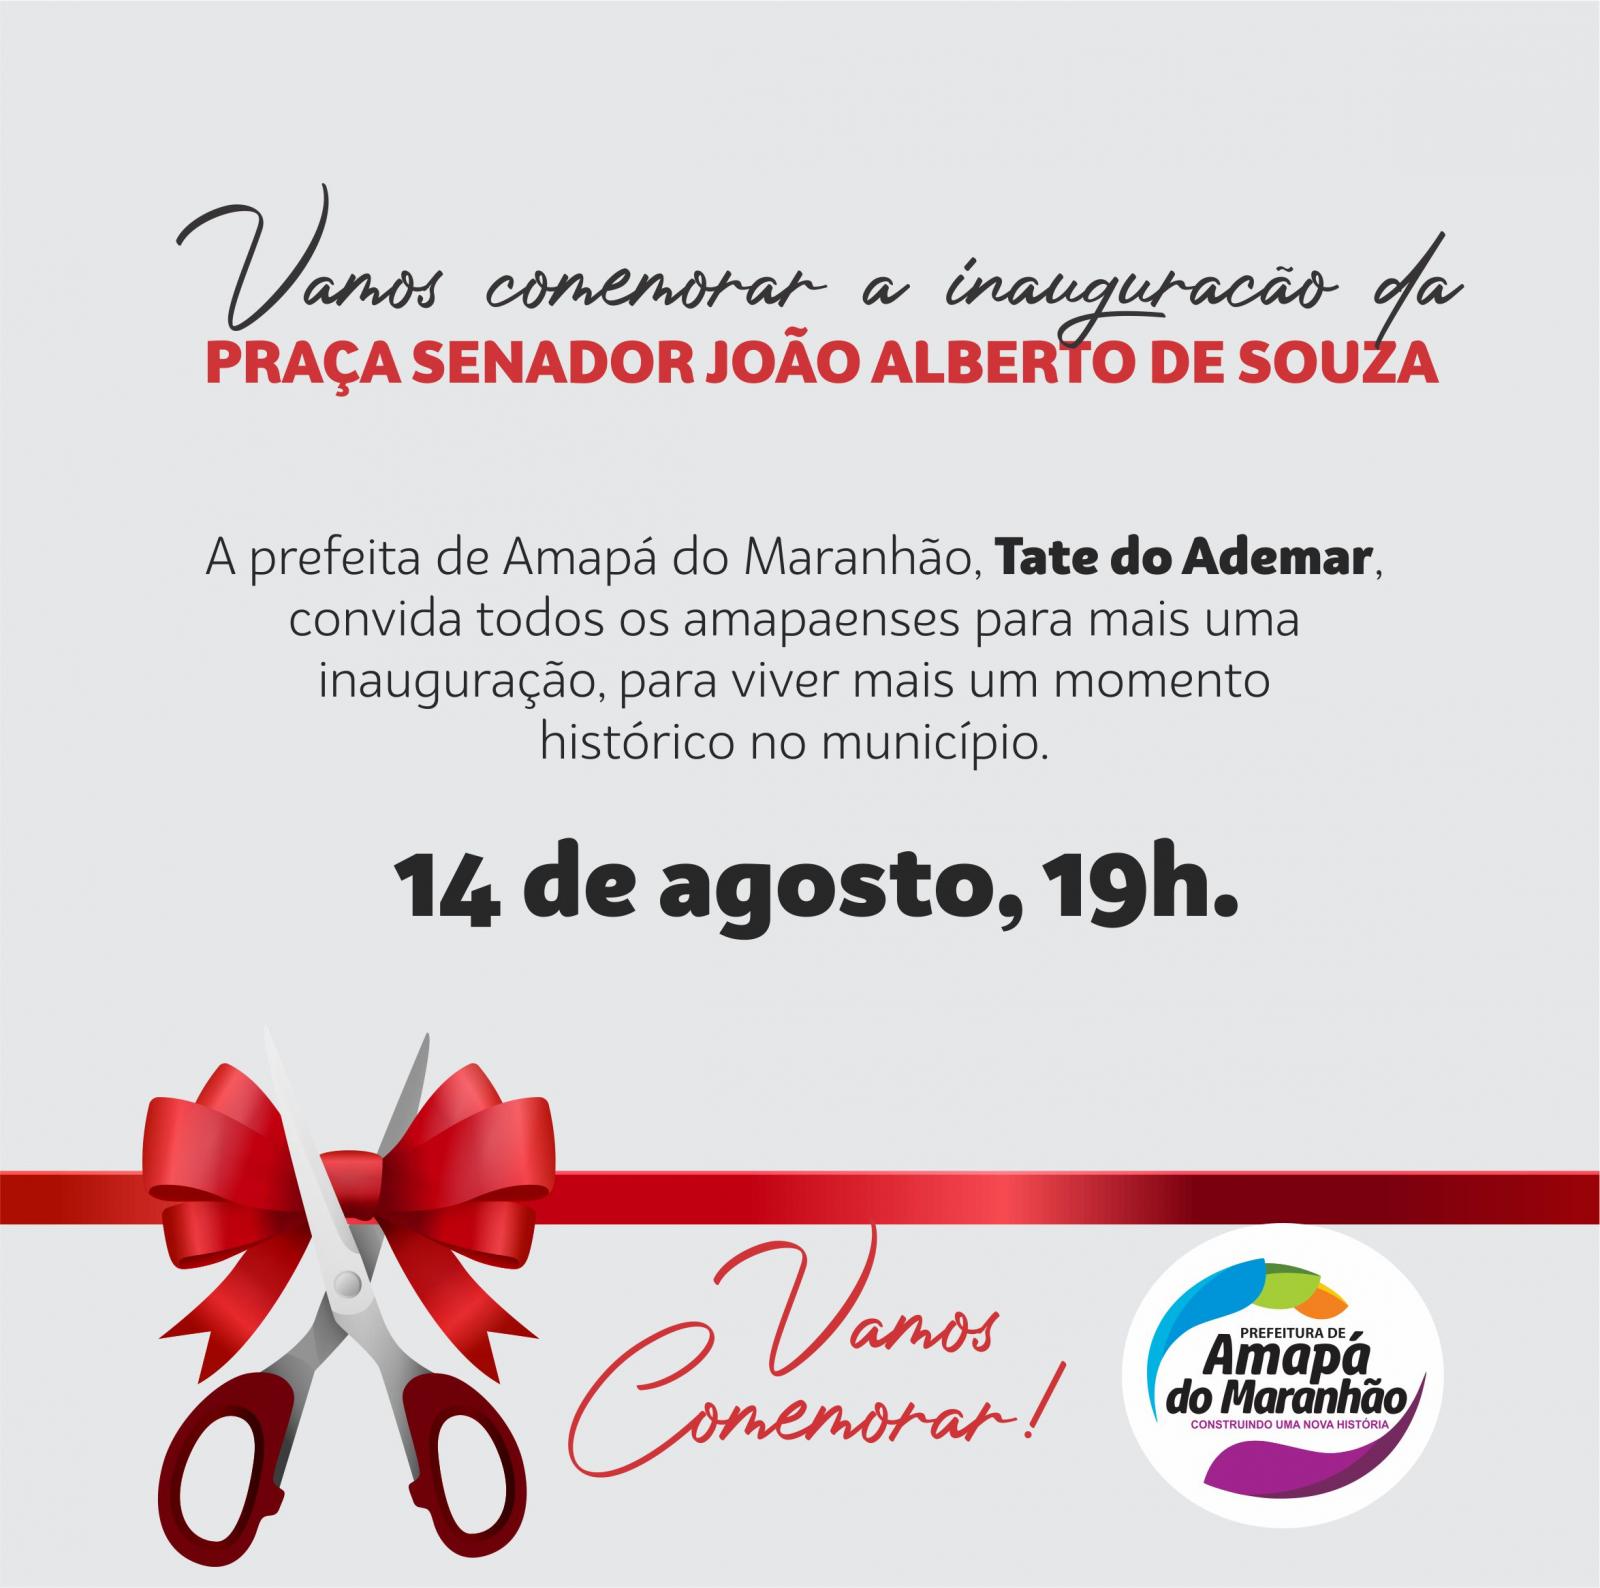 Prefeitura de Amapá do Maranhão vai inaugurar uma praça nesta sexta, 14